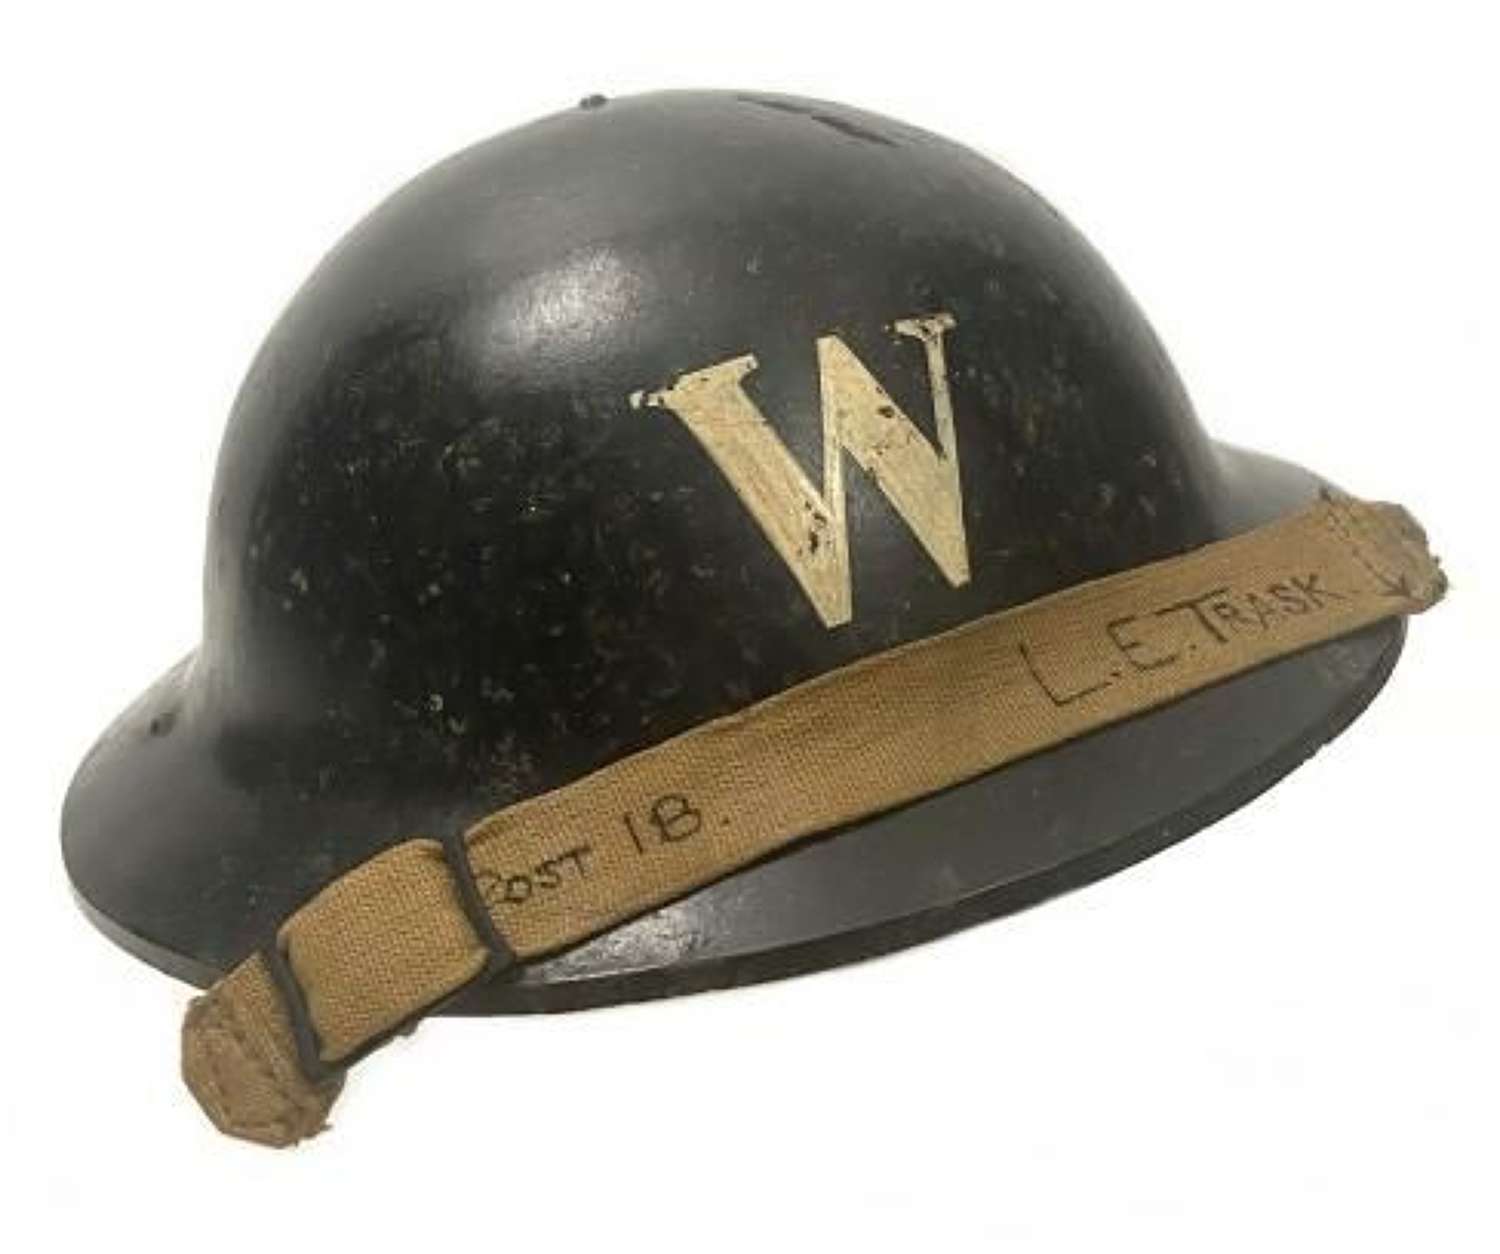 Original 1940 Dated ARP Warden's 'Plastfort' Bakelite Helmet